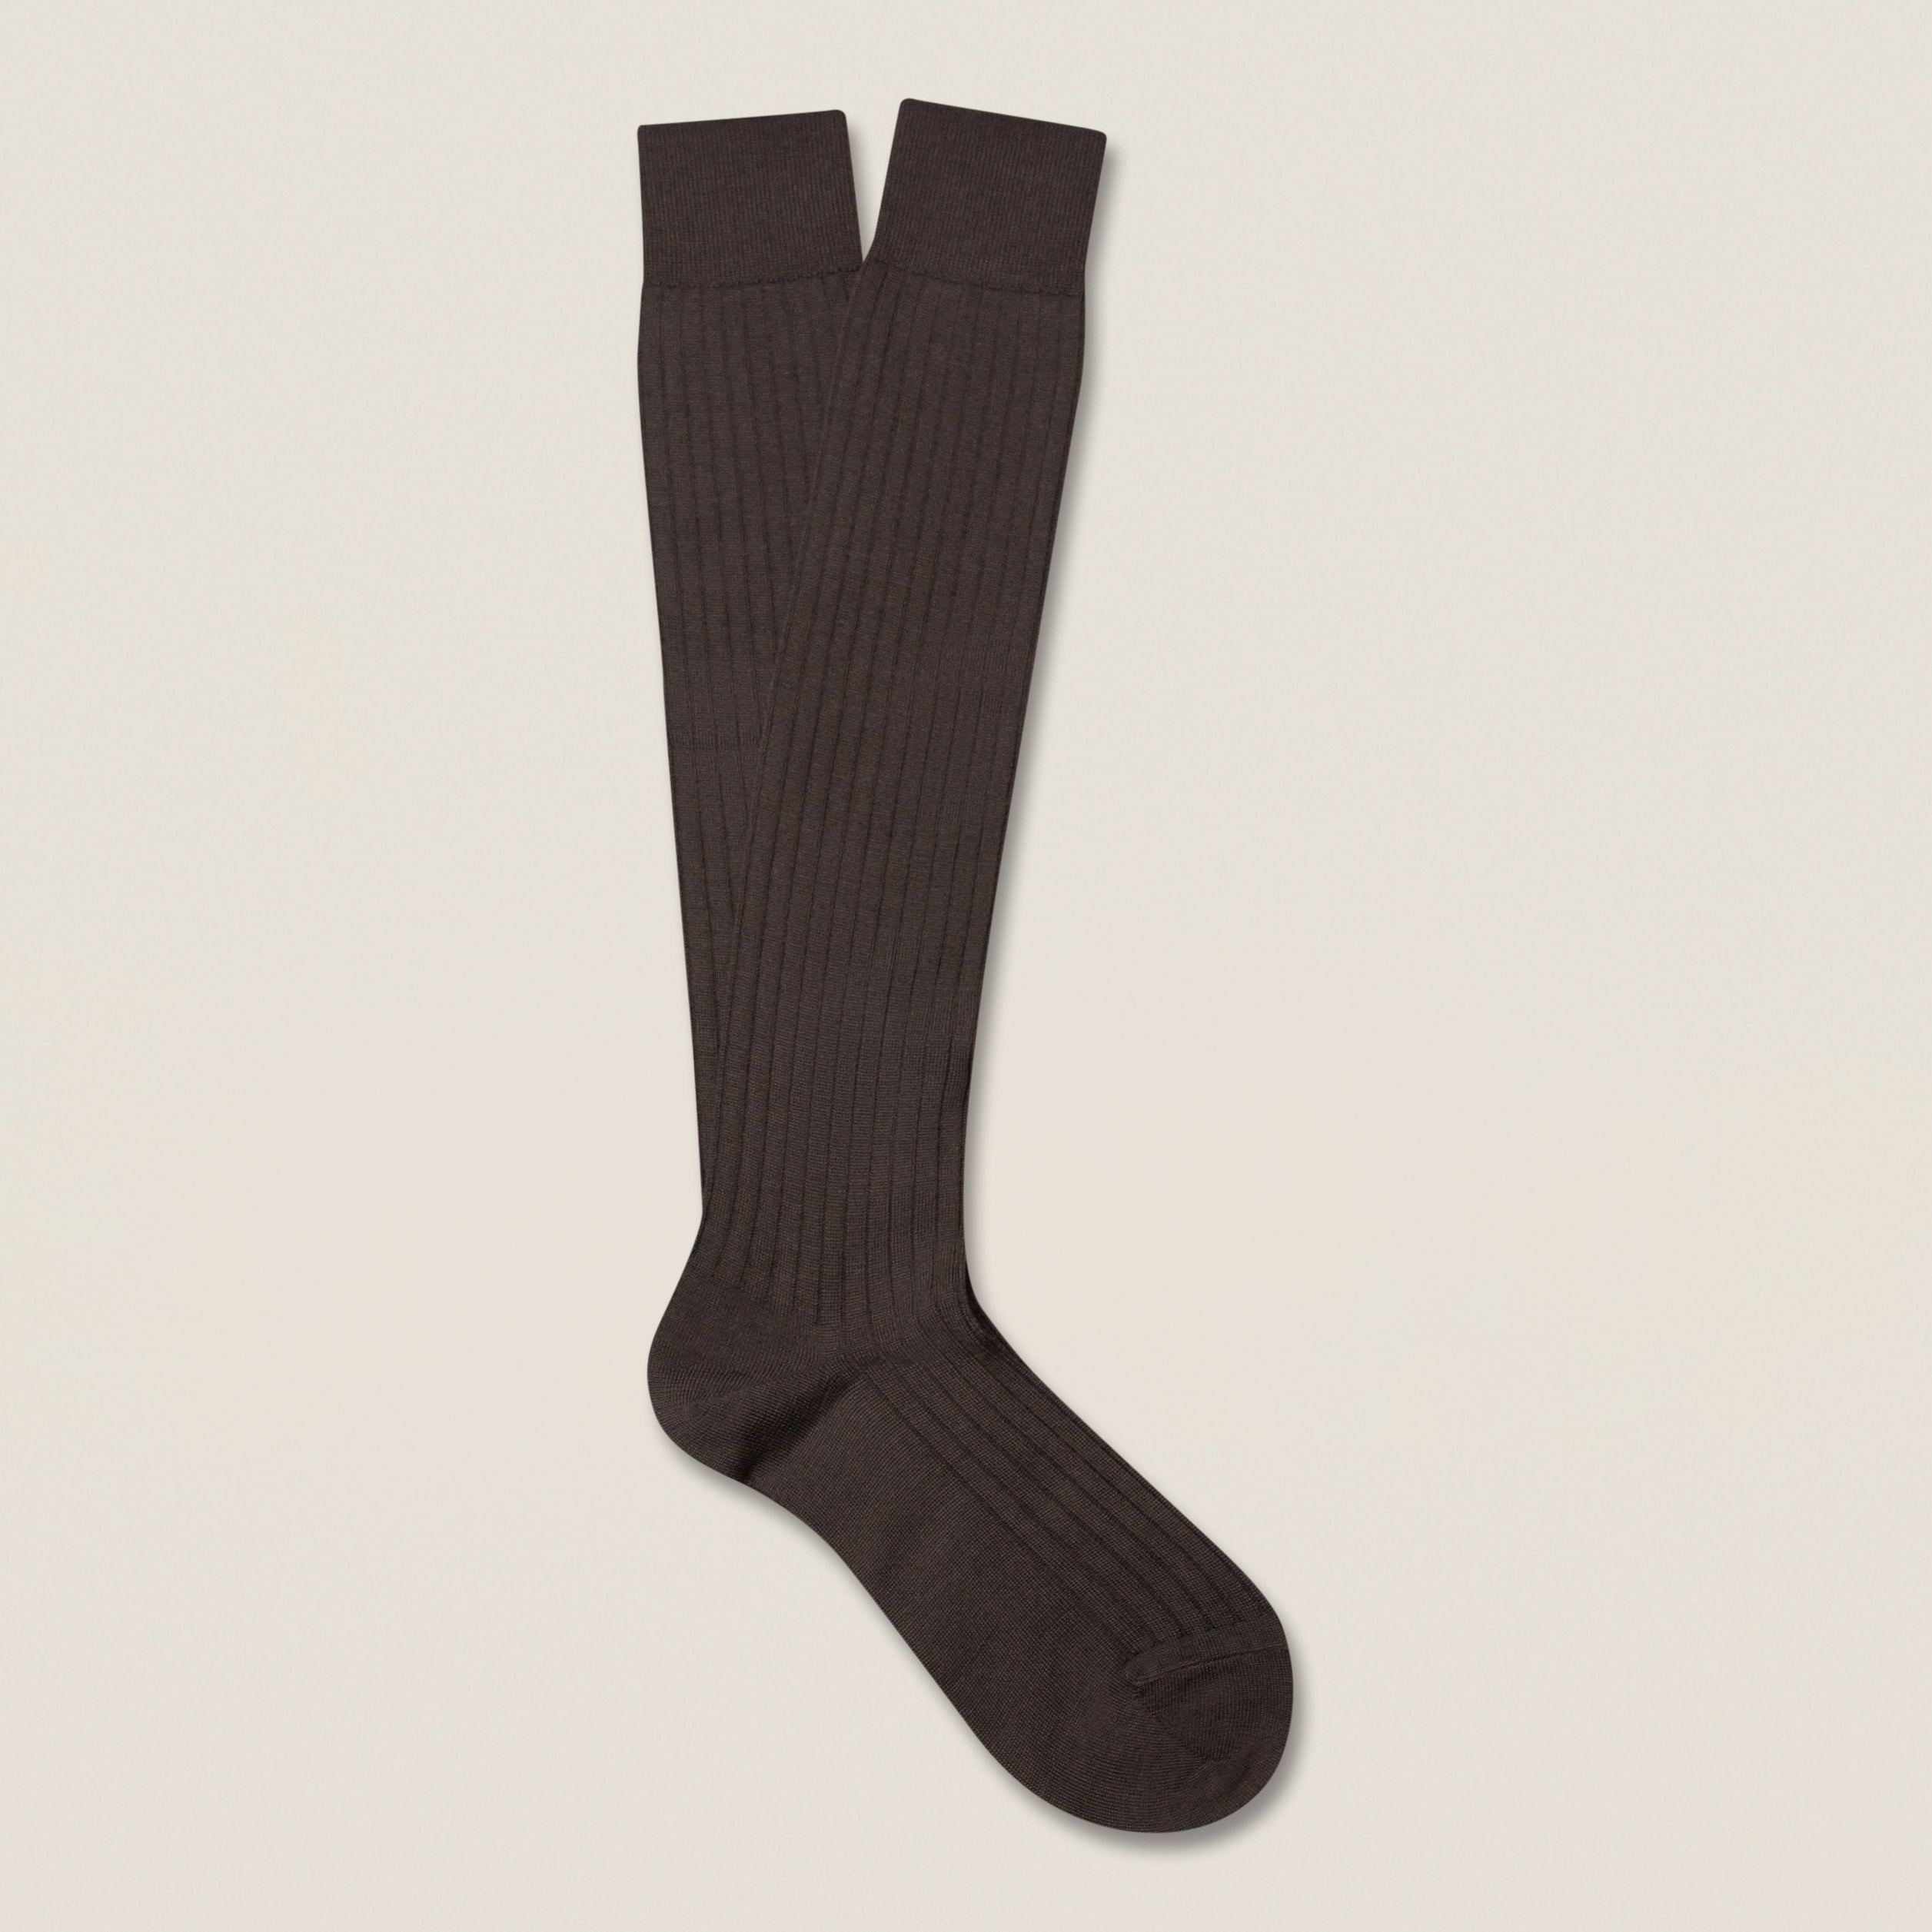 Gustav - Knee-High Merino Socks - Brown